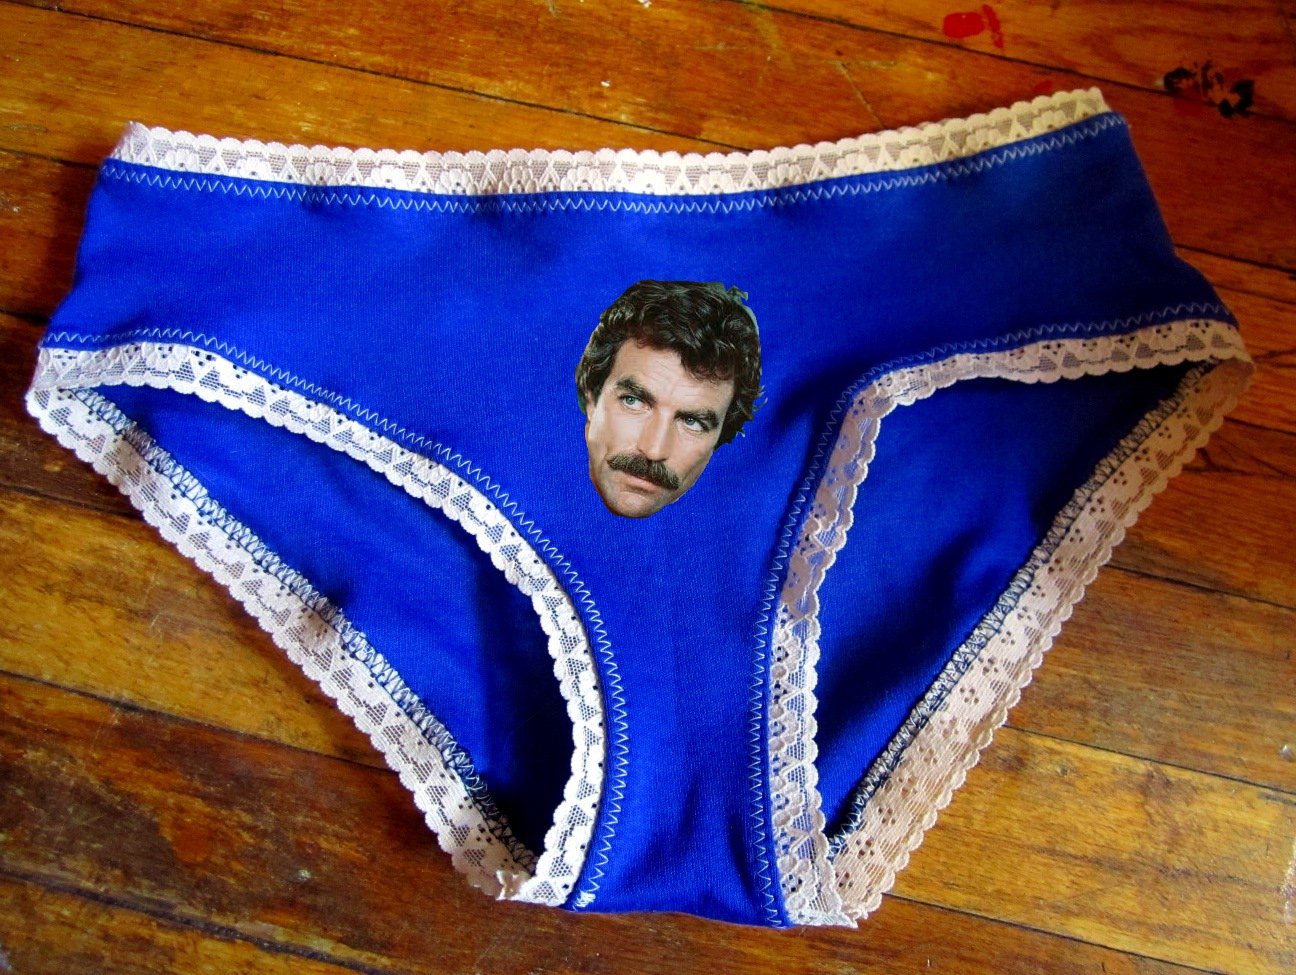 Make Your Own Damn Underwear! – Amie Scott